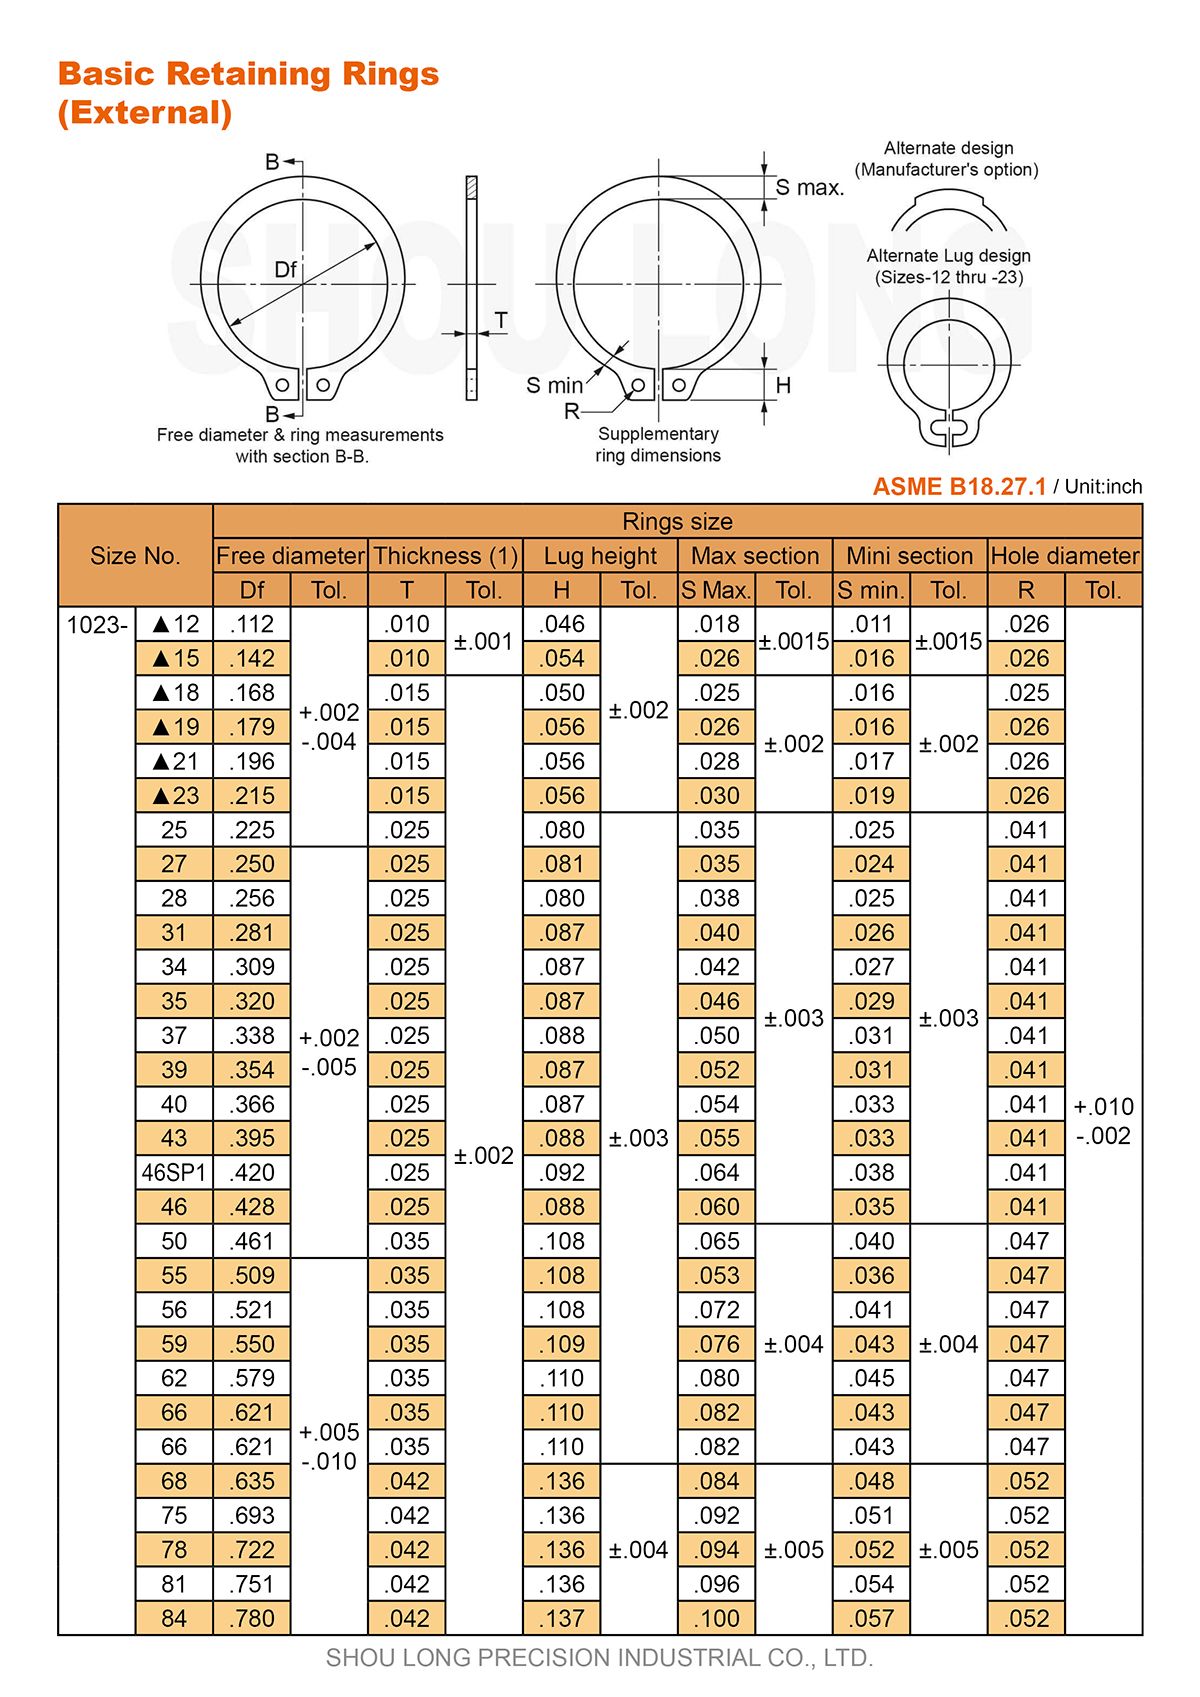 Especificação de Anéis de Retenção Básicos em Polegadas para Eixo ASME/ANSI B18.27.1 -1